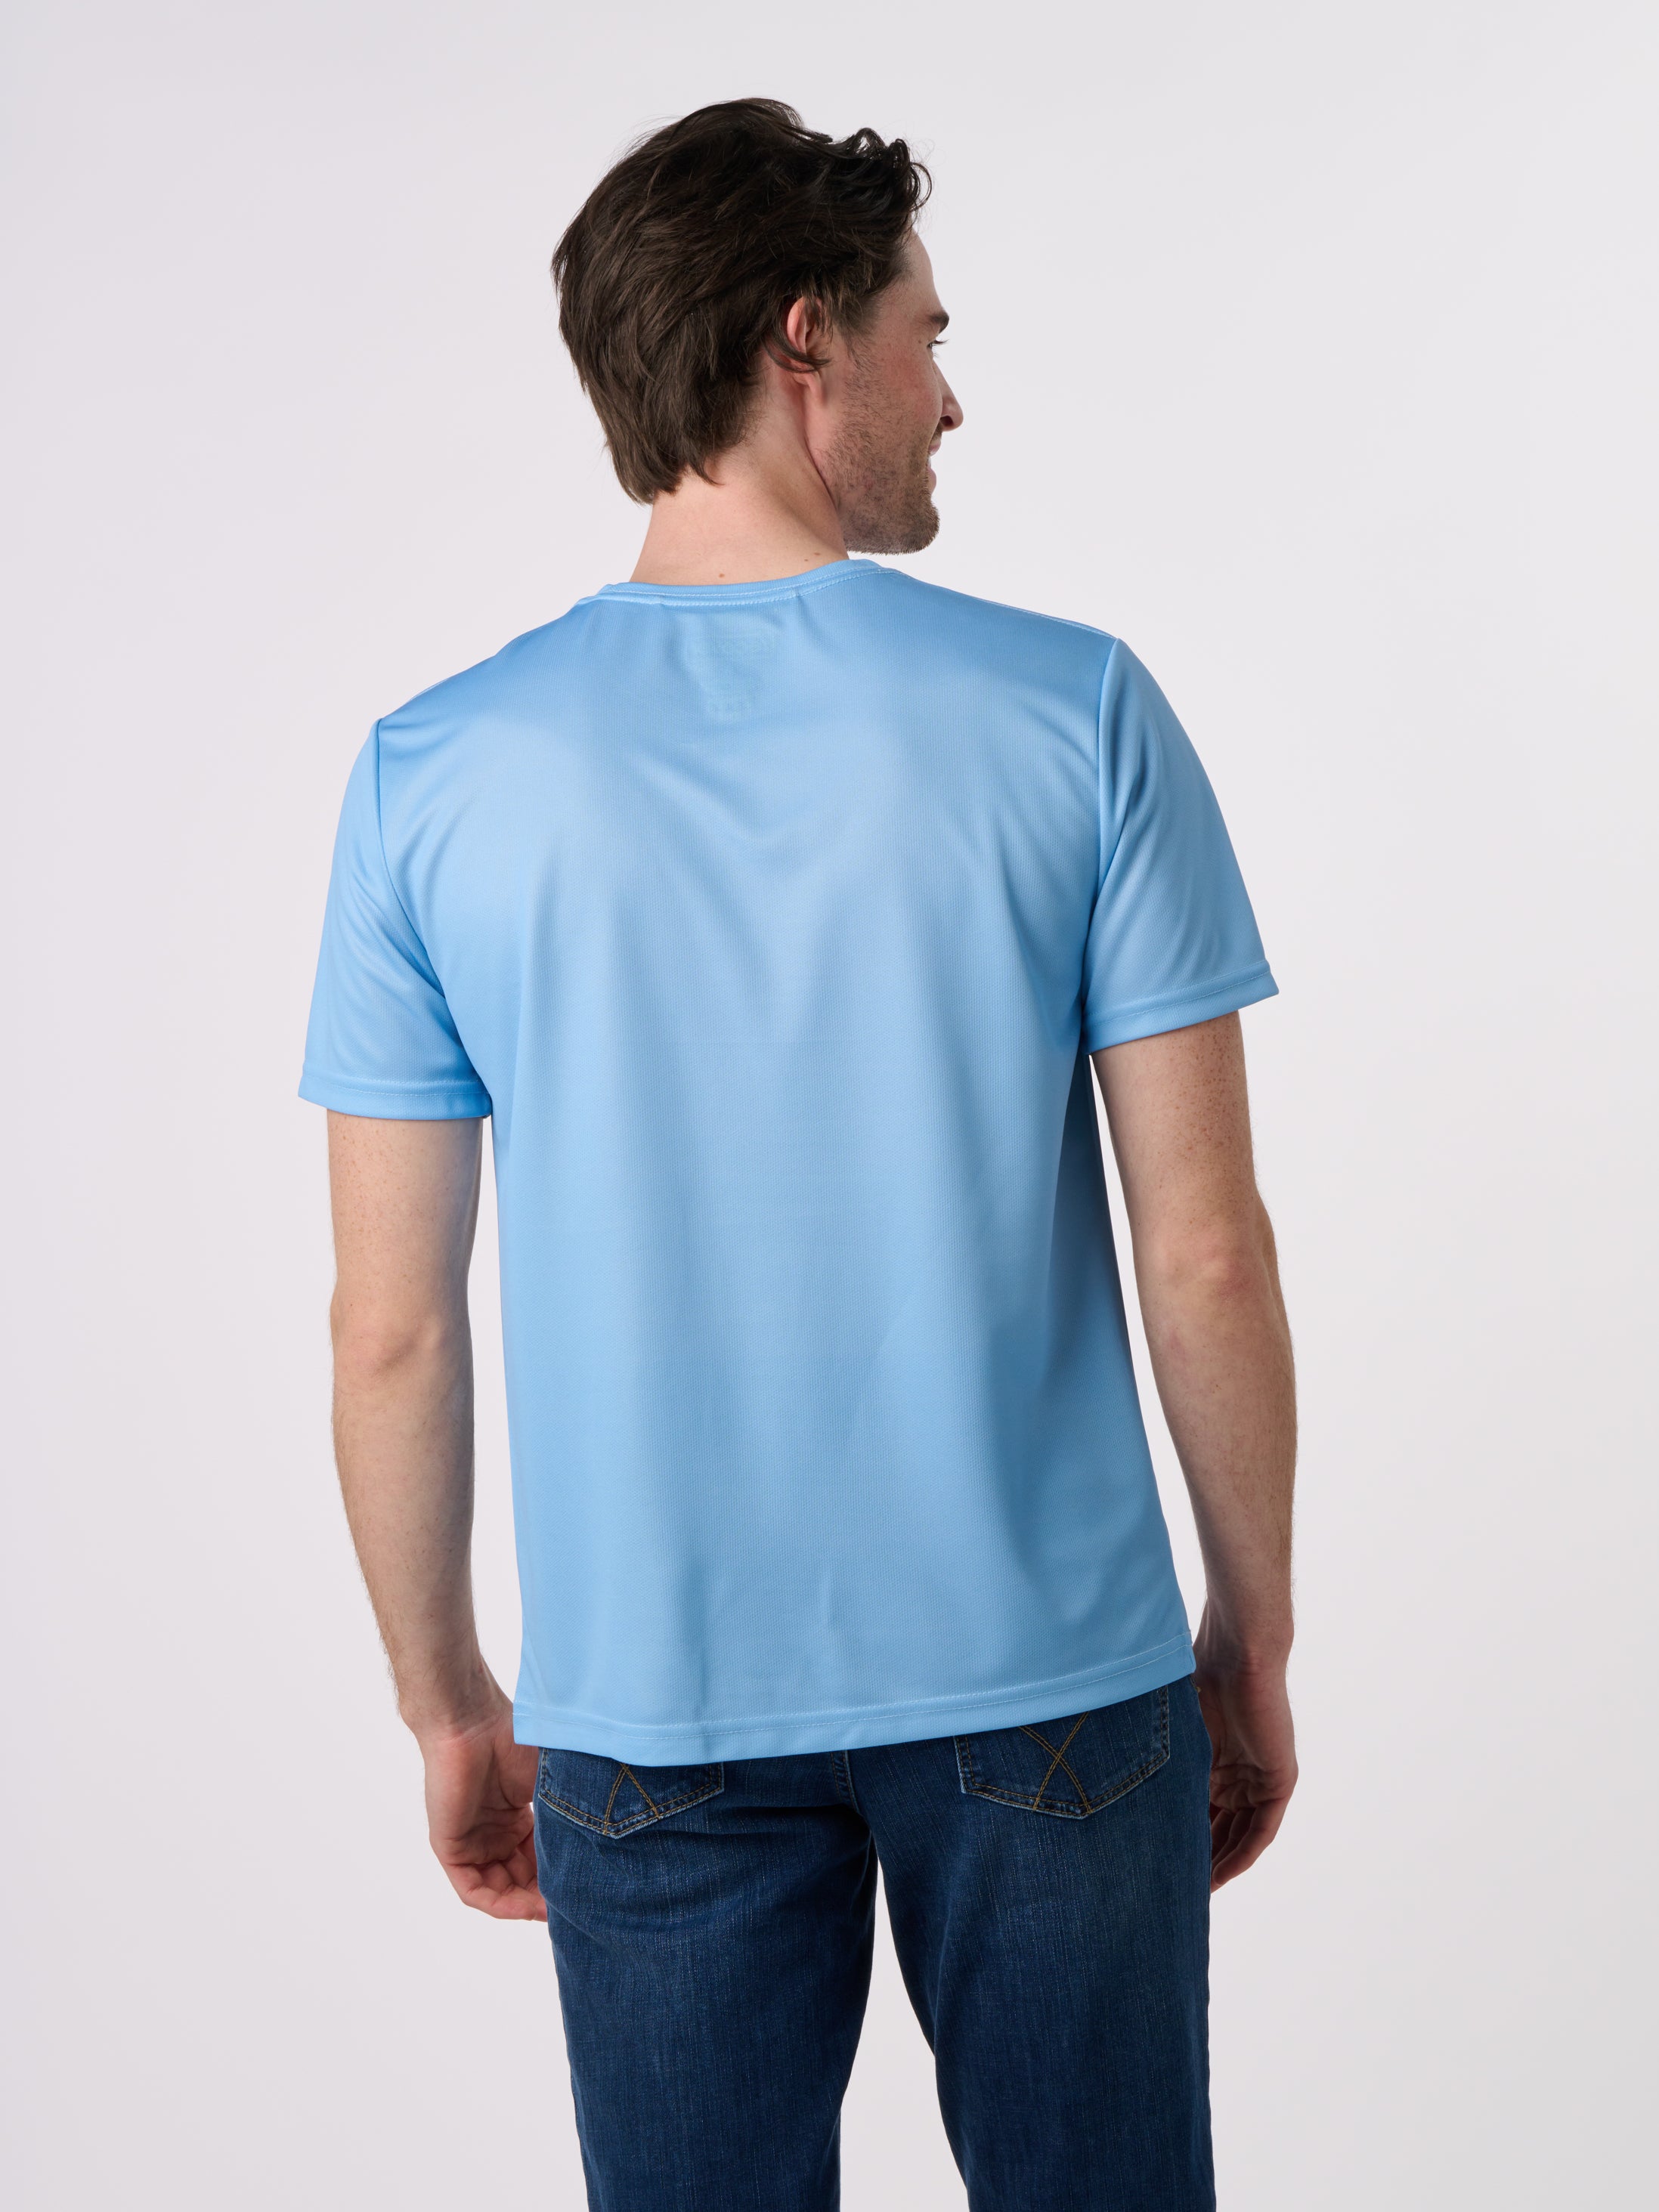 SE1000 - Sport Elite Short Sleeve T-Shirt